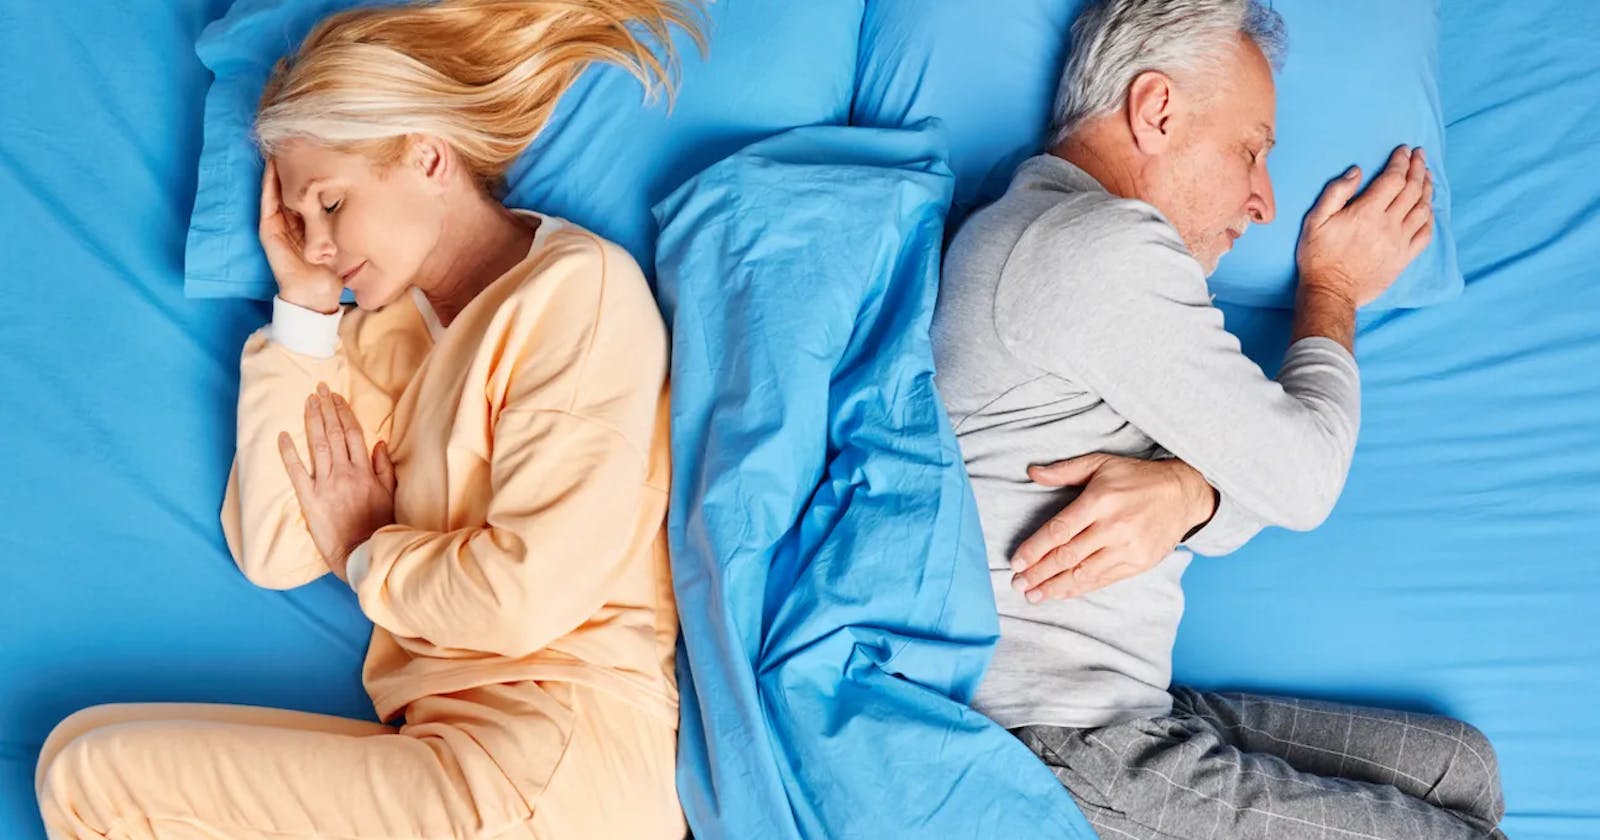 Free Methods to Overcome Sleep Challenges